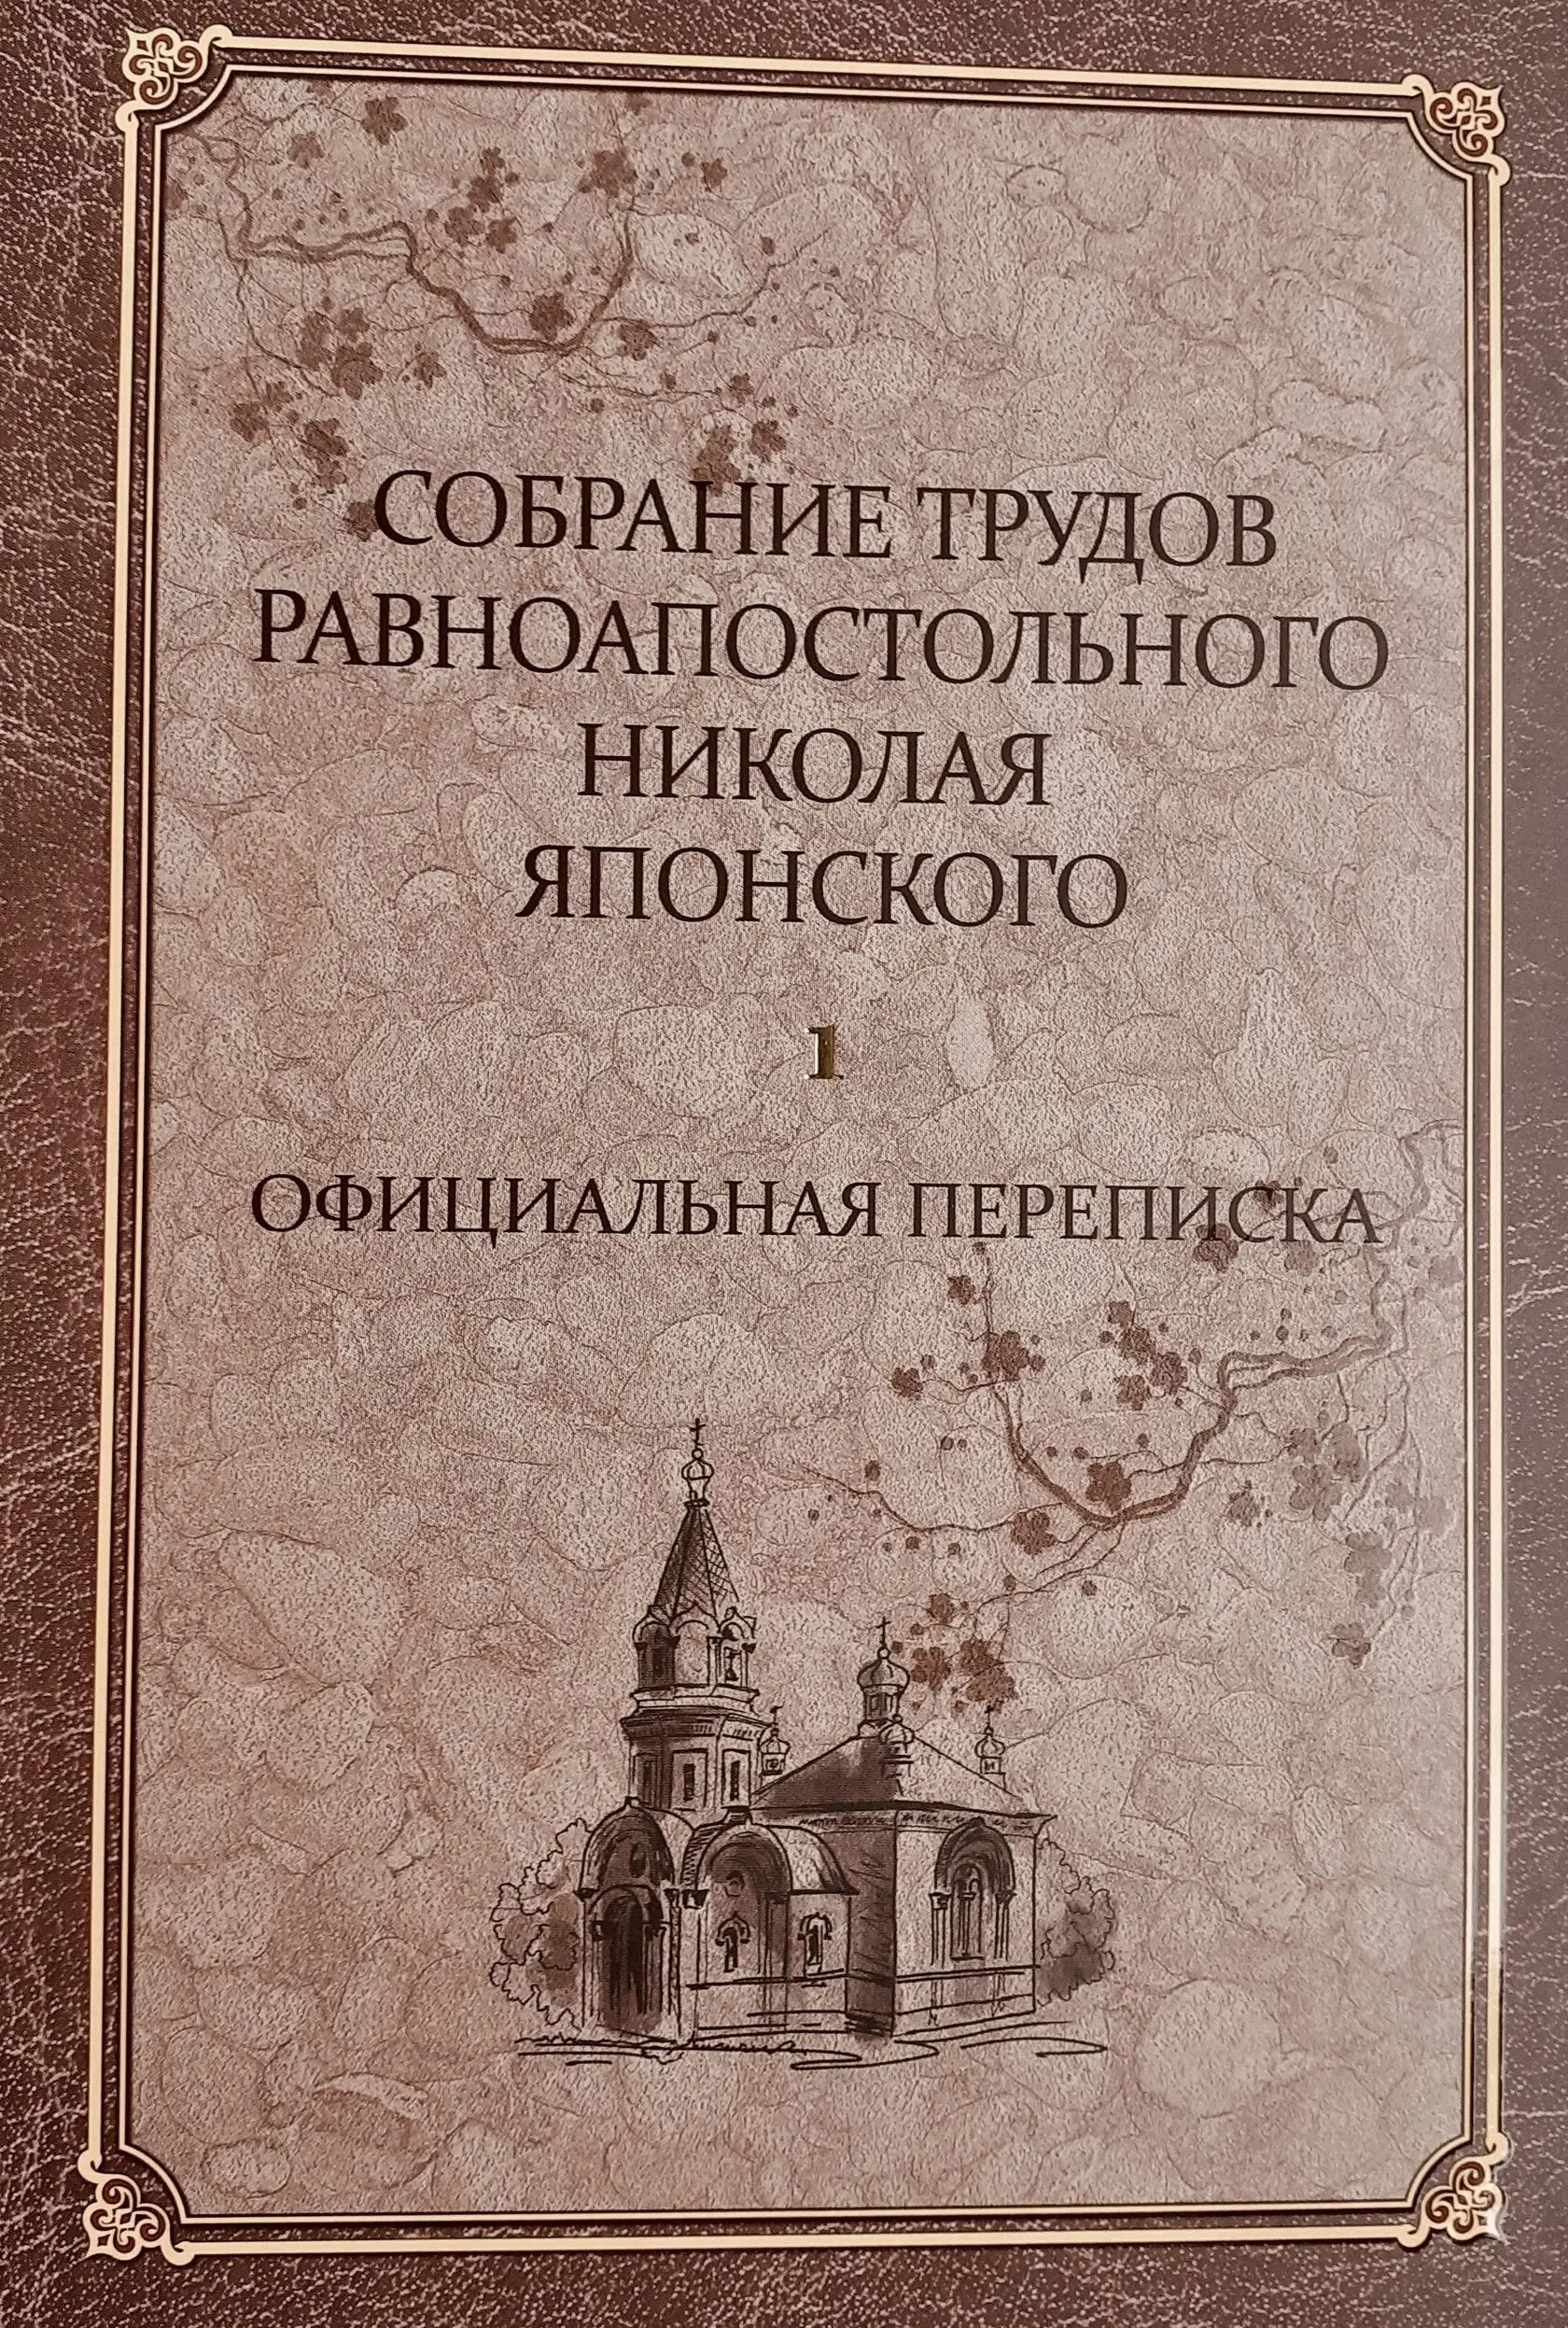 Ранее неизвестные документы включены в переиздание трудов святителя Николая Японского